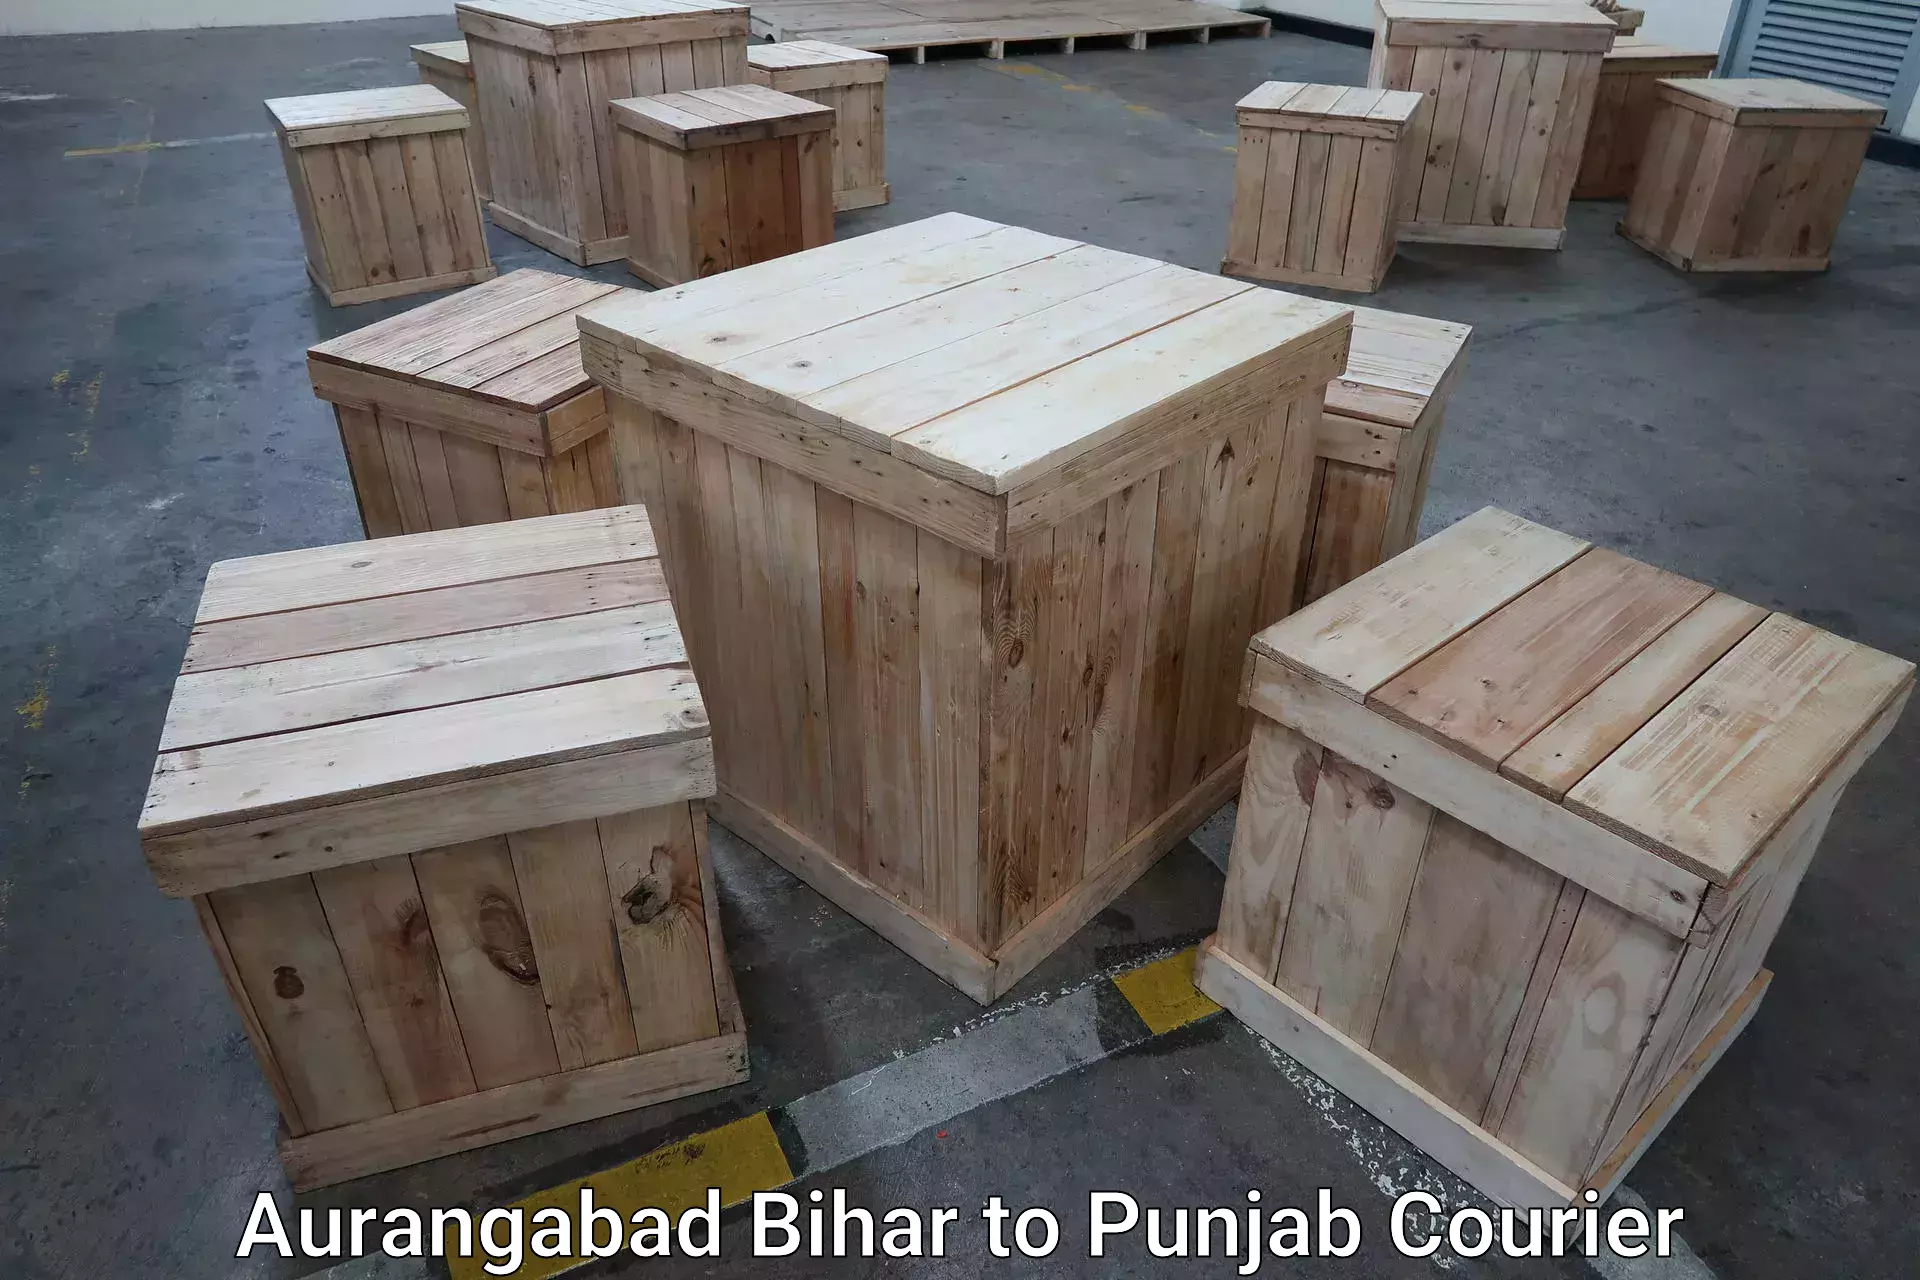 Express baggage shipping Aurangabad Bihar to Punjab